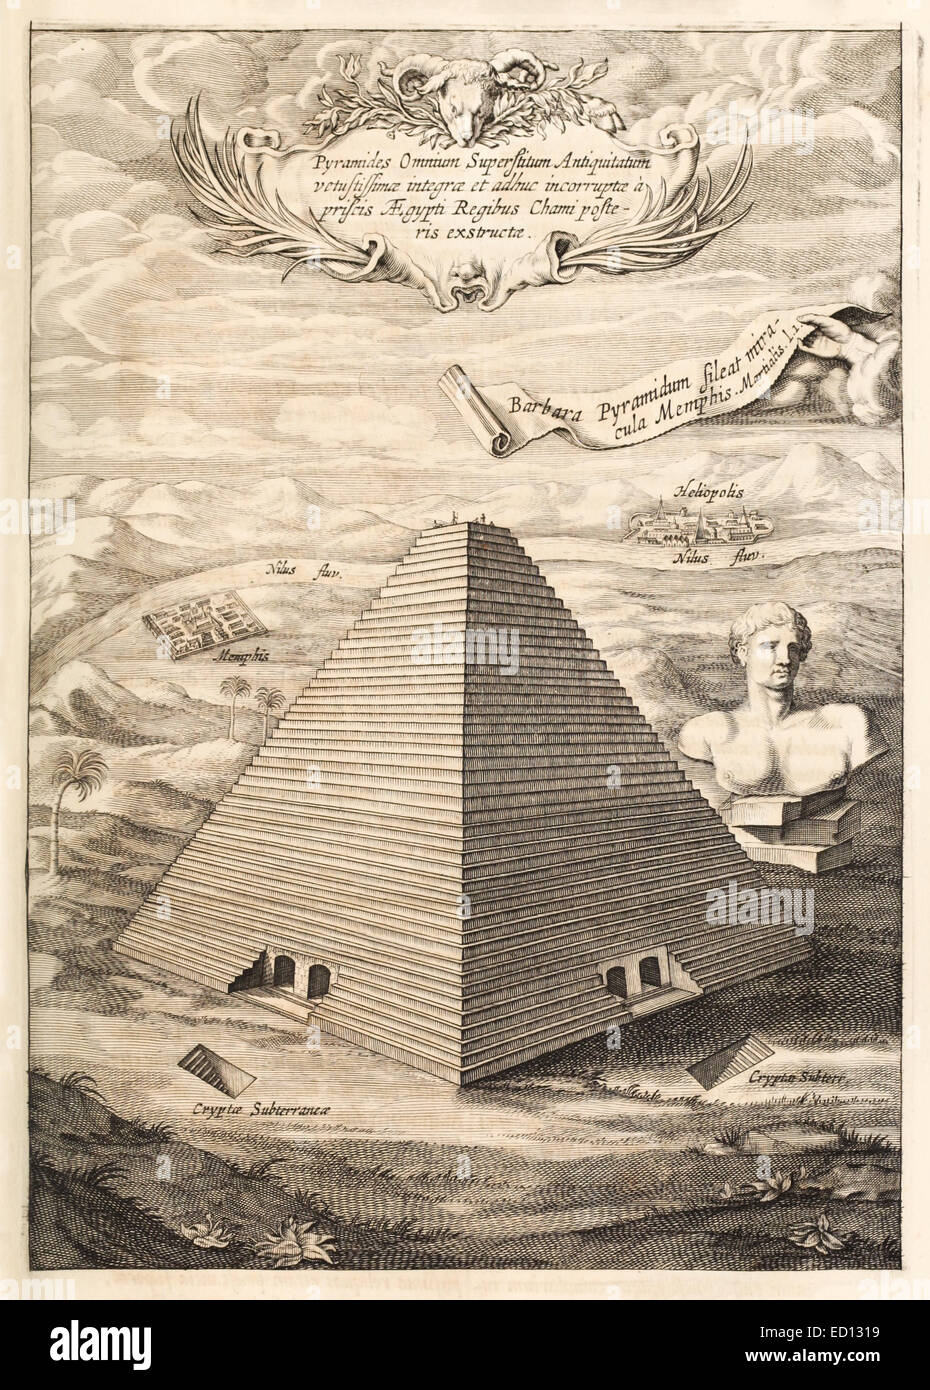 Pyramiden von Gizeh, eines der sieben Weltwunder der Antike, 17. Jahrhundert Abbildung. Siehe Beschreibung für mehr Informationen. Stockfoto